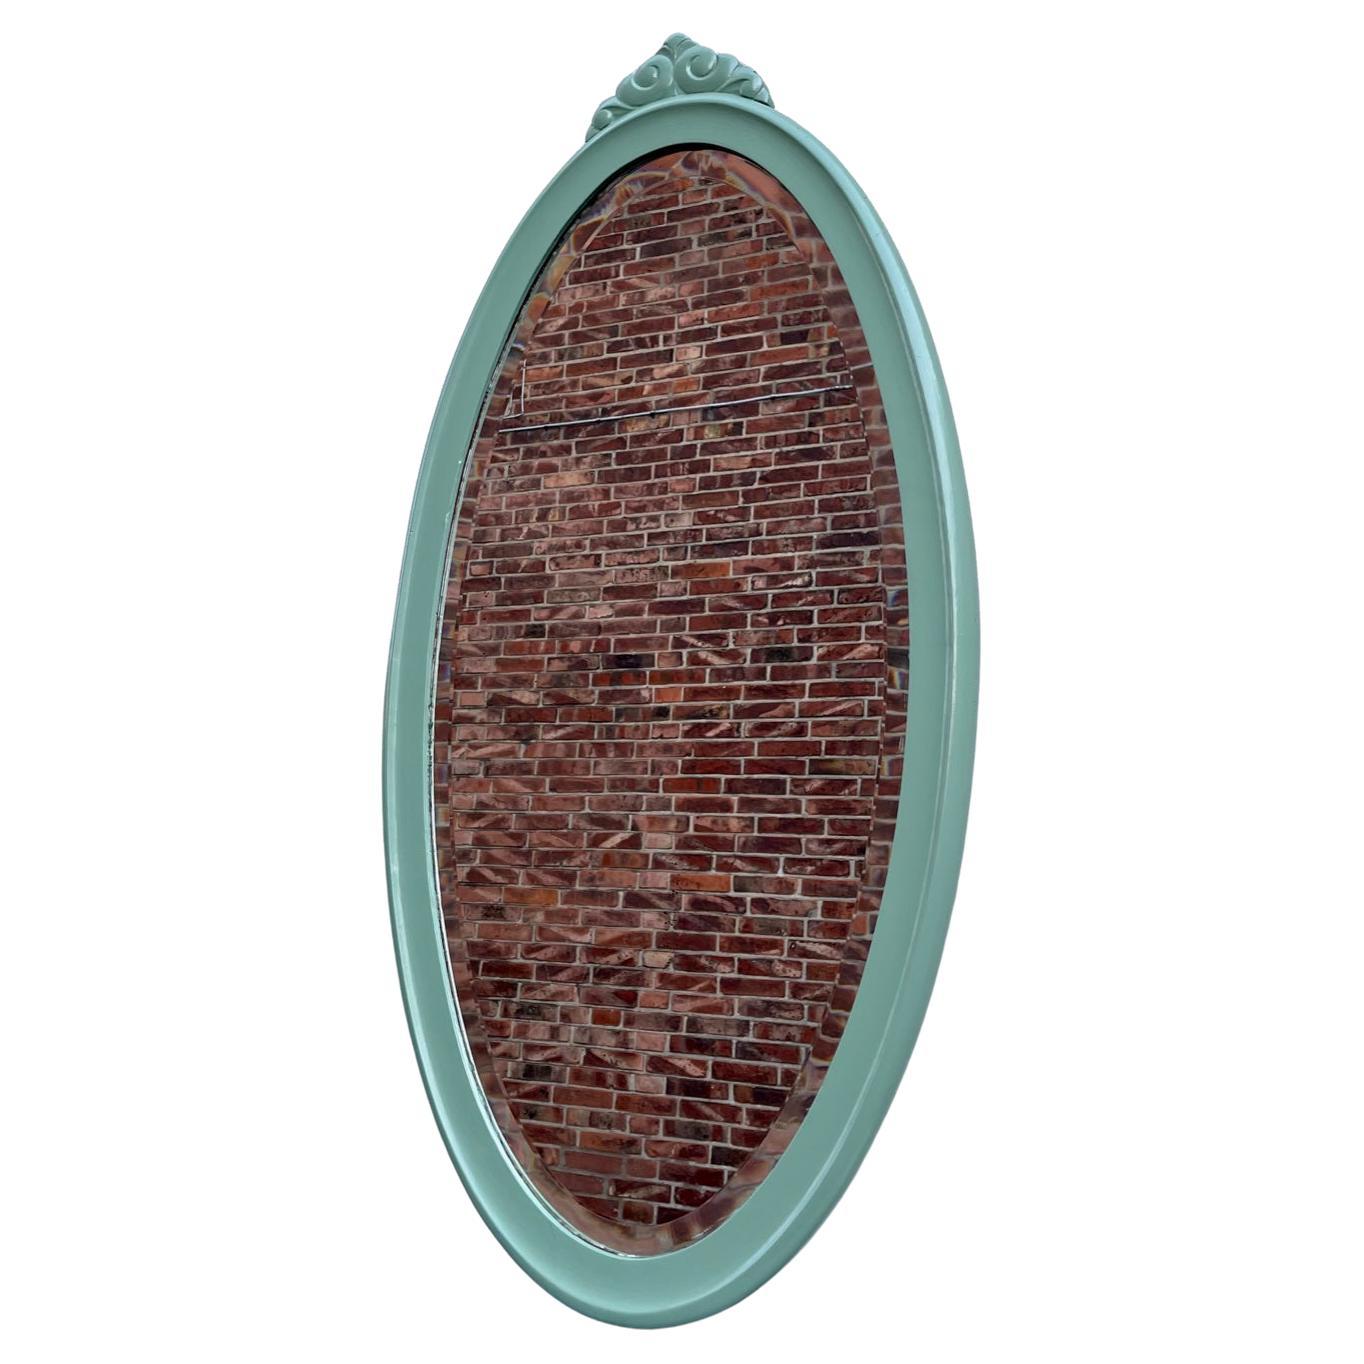 Grand miroir de 109 cm en pin peint. Il est doté d'un verre miroir biseauté et de profils arrondis qui complètent sa douce forme ovale. Il a été fabriqué par un ébéniste anonyme en Scandinavie dans les années 1930 ou 1940. La peinture vert clair est